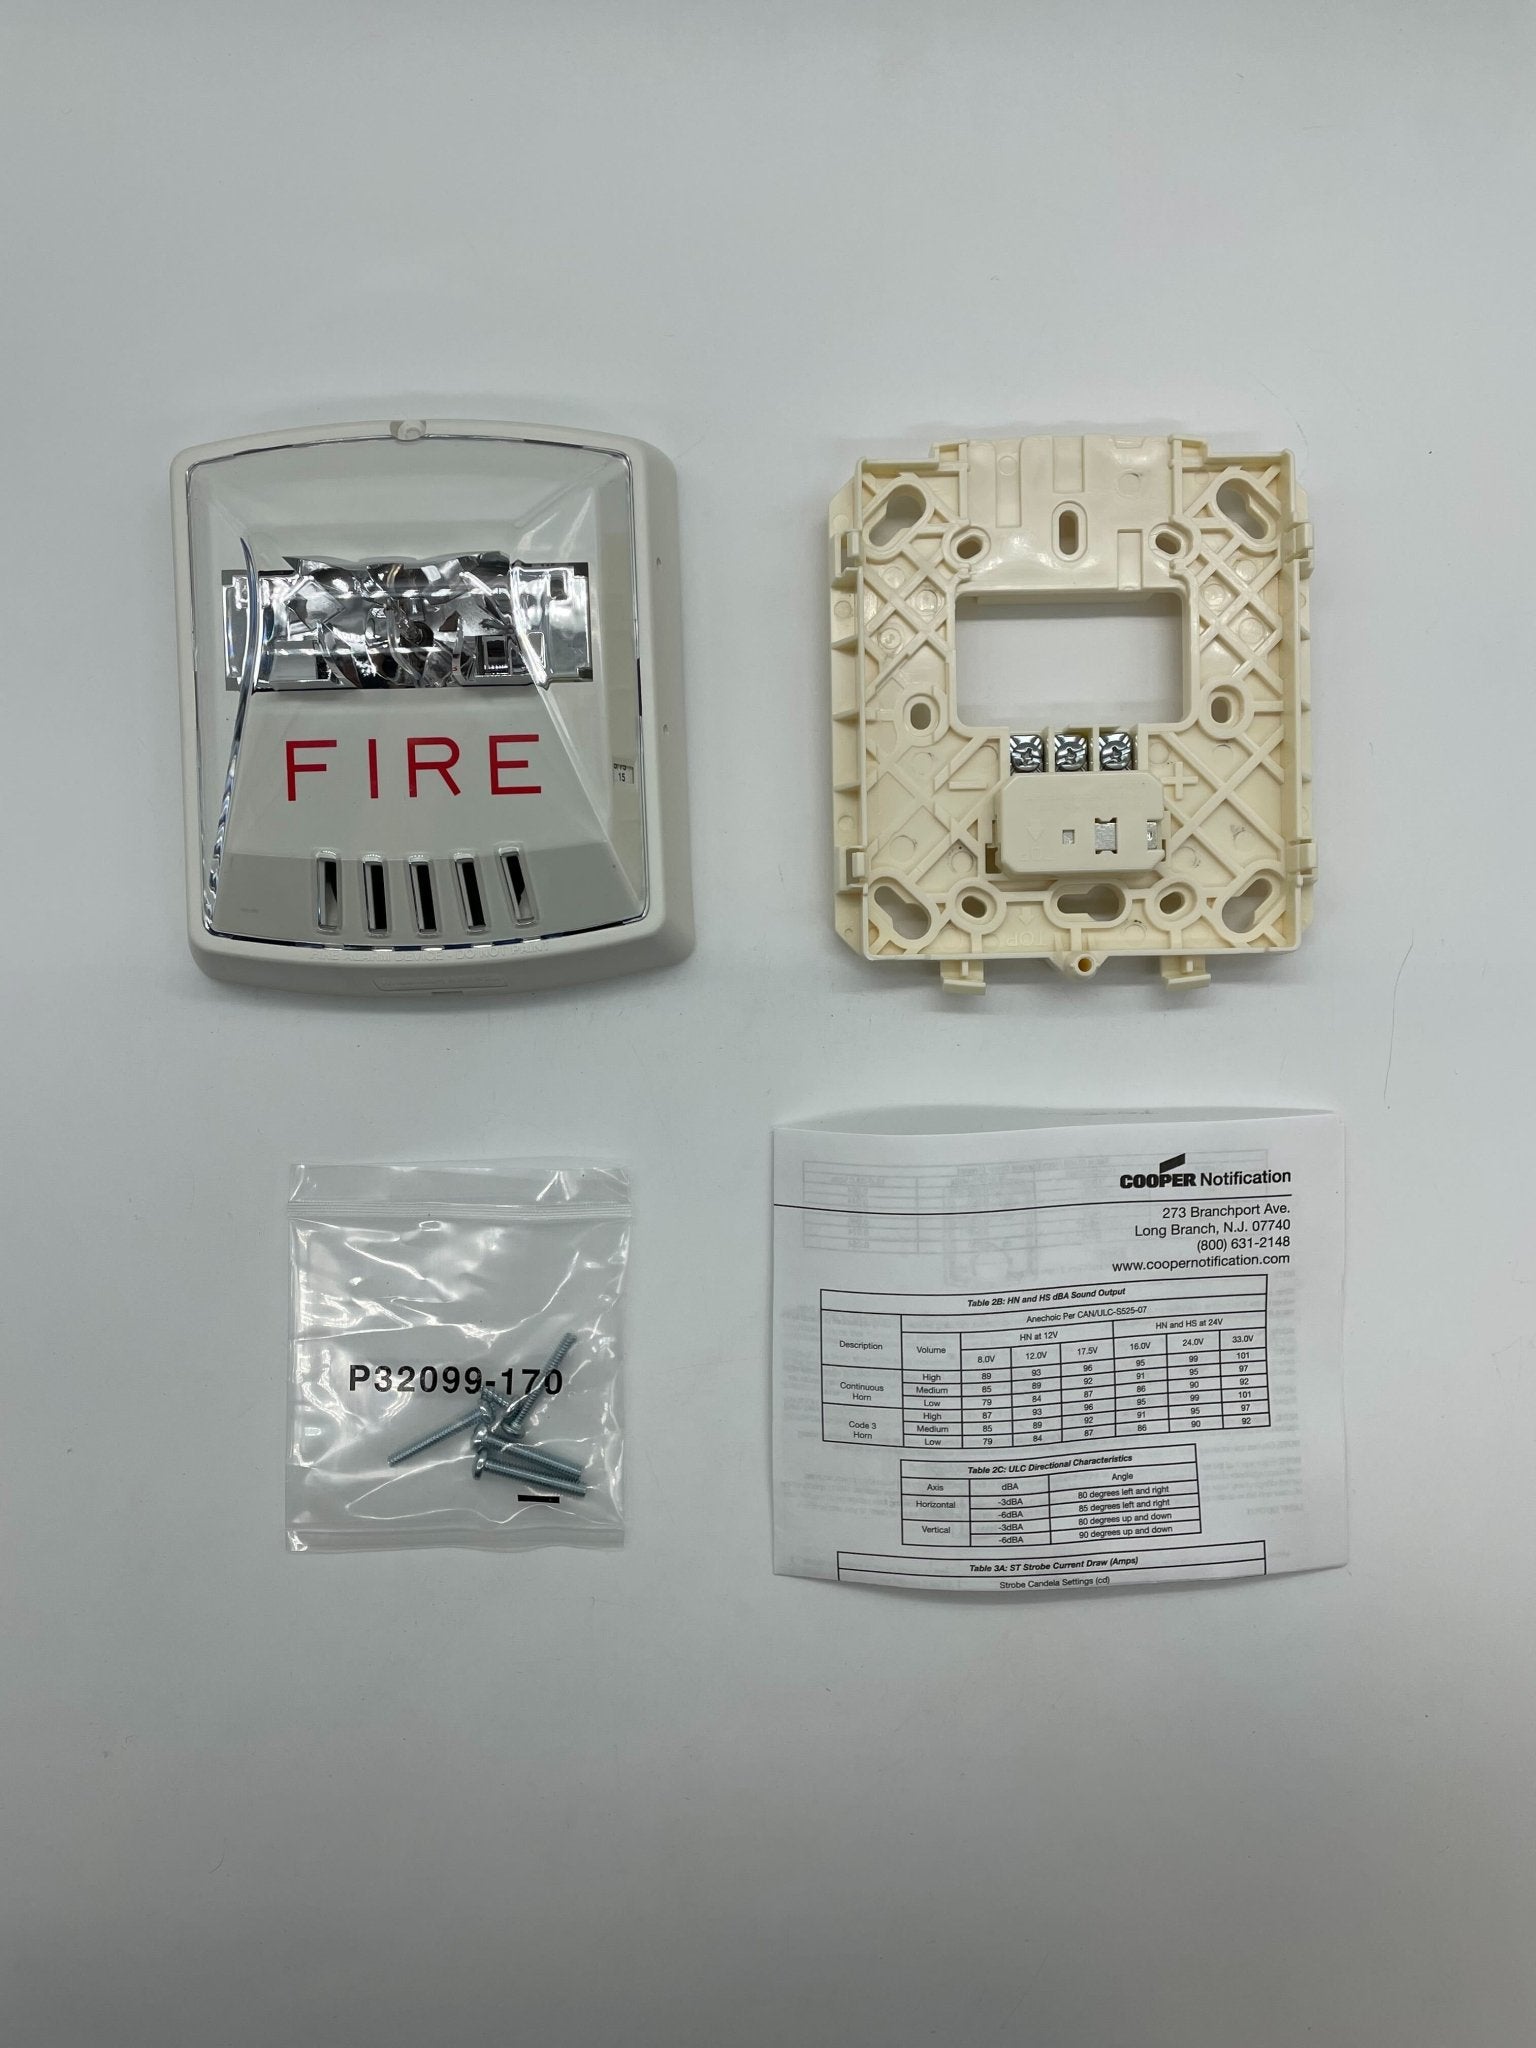 Wheelock HSW - The Fire Alarm Supplier